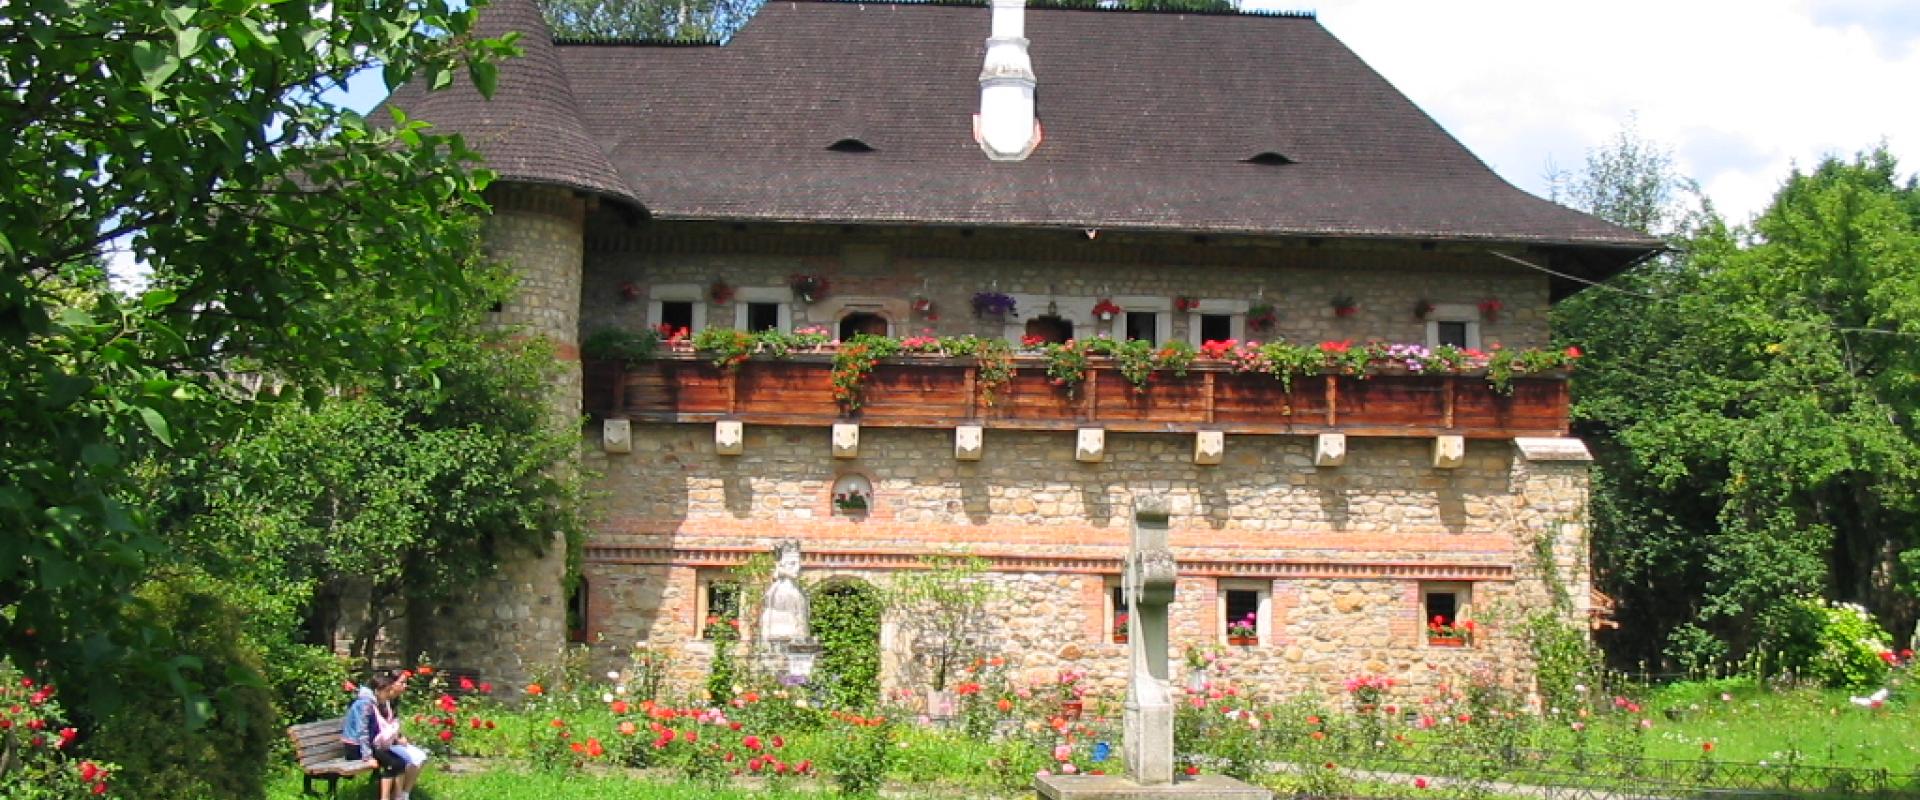 Ein traditionelles Steinhaus mit strohgedecktem Dach, farbenfrohen Blumenkästen, umgeben von einem gepflegten Garten mit Besuchern